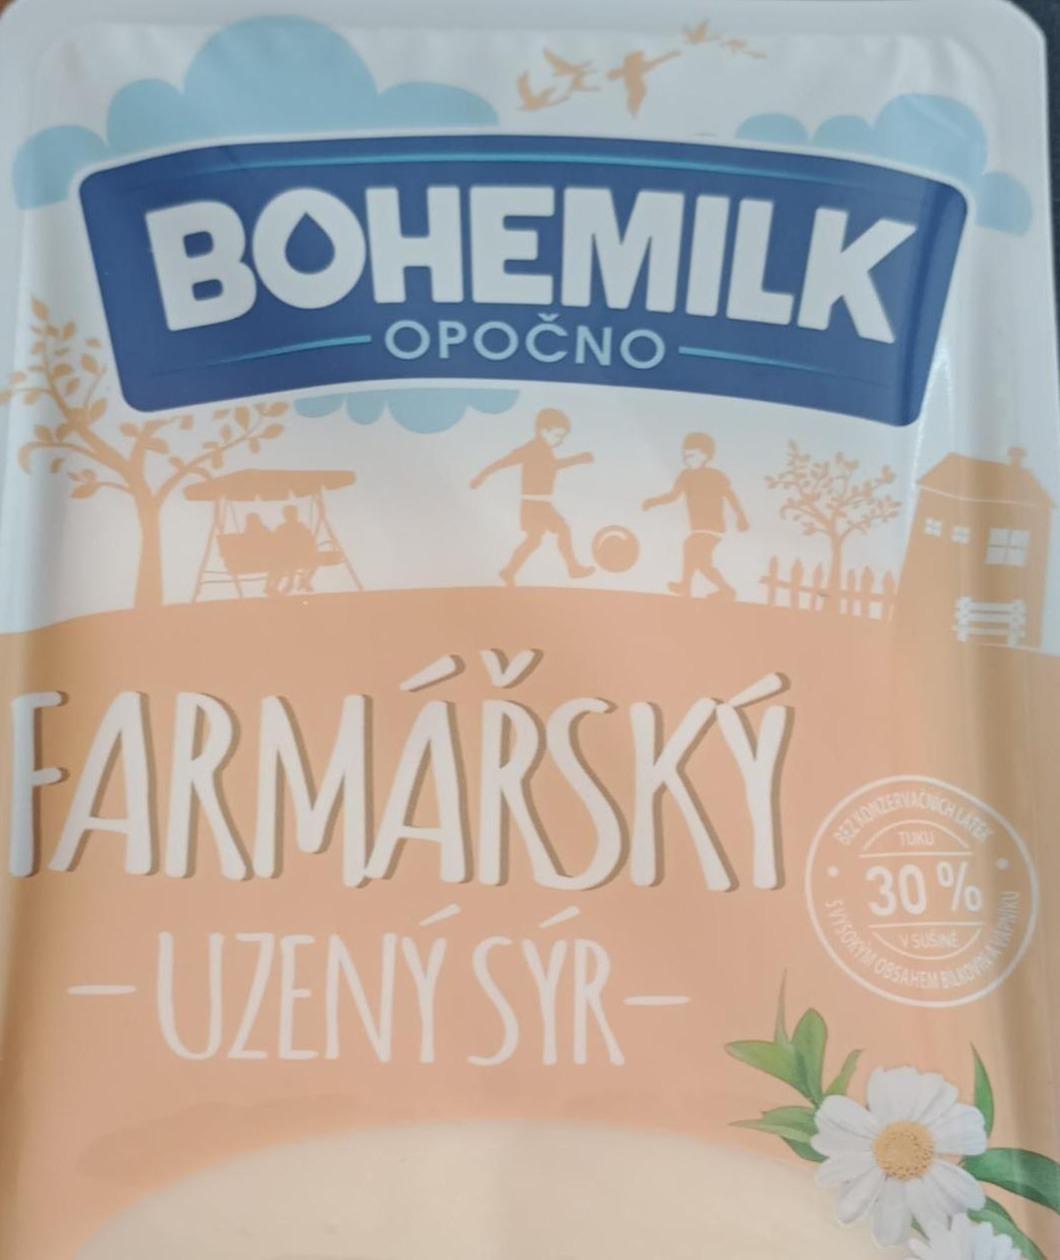 Fotografie - Farmářský uzený sýr 30% Bohemilk